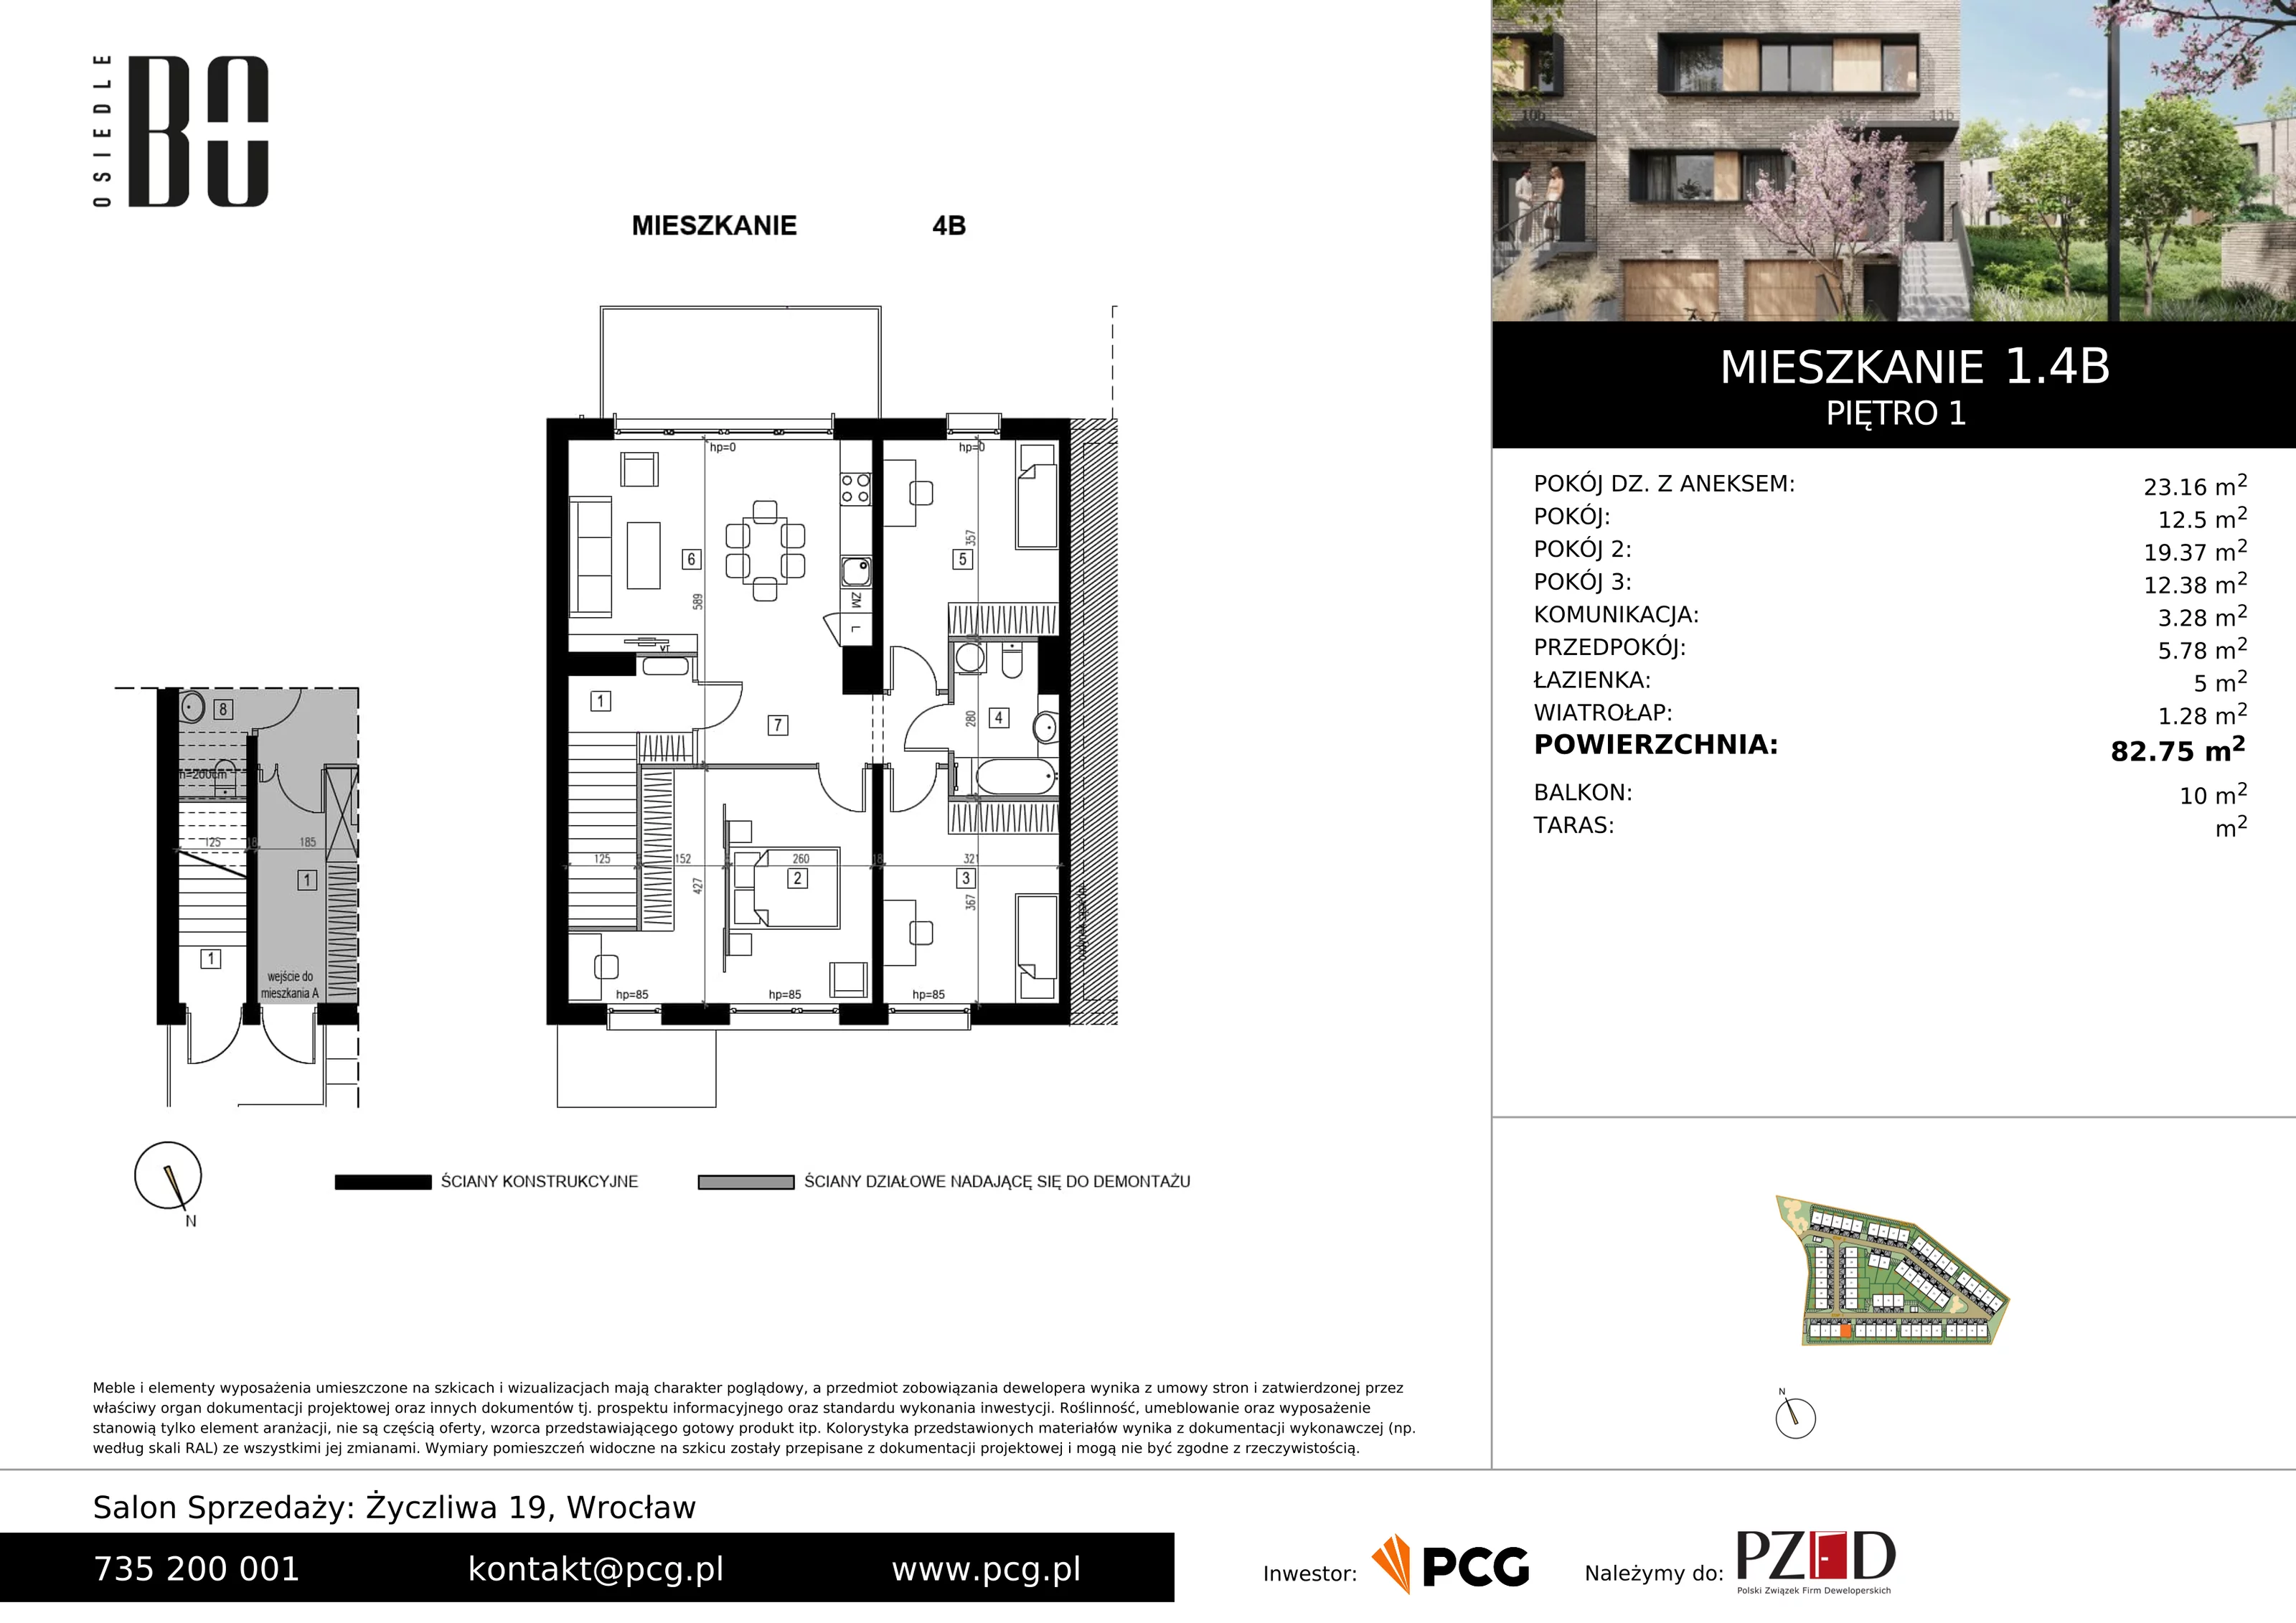 Apartament 82,75 m², piętro 1, oferta nr 1.4B, Osiedle BO, Wrocław, Kowale, ul. Bociana